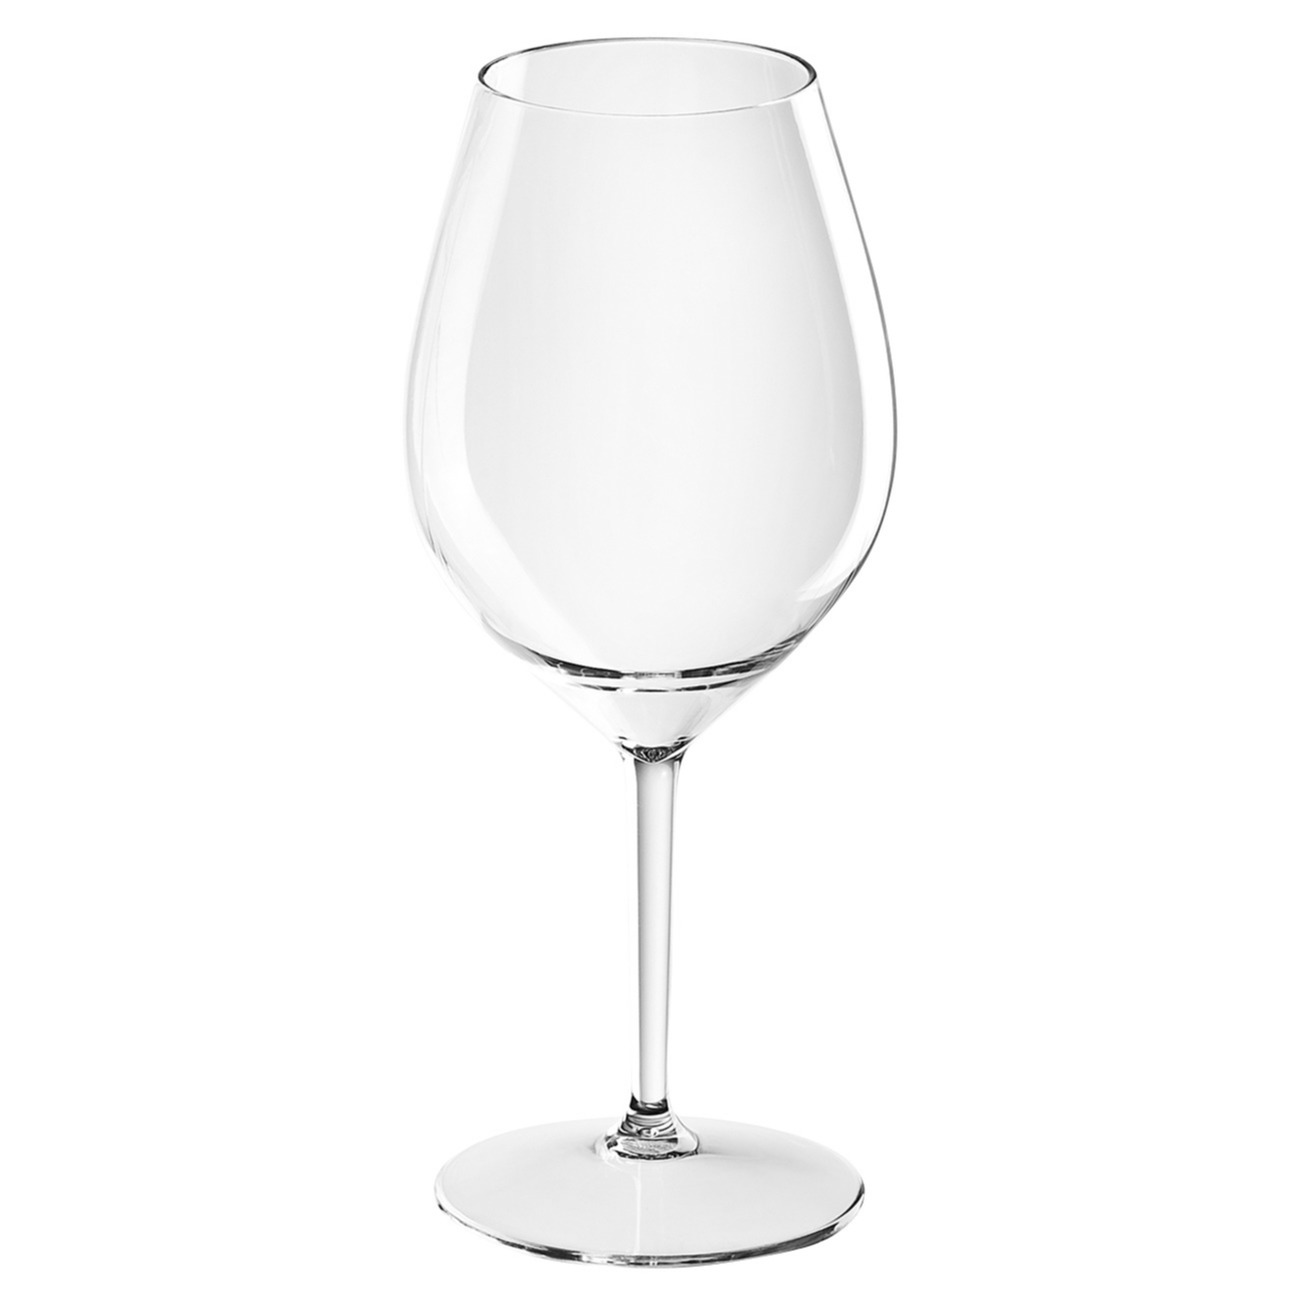 1x Witte of rode wijn glazen 51 cl-510 ml van onbreekbaar transparant kunststof